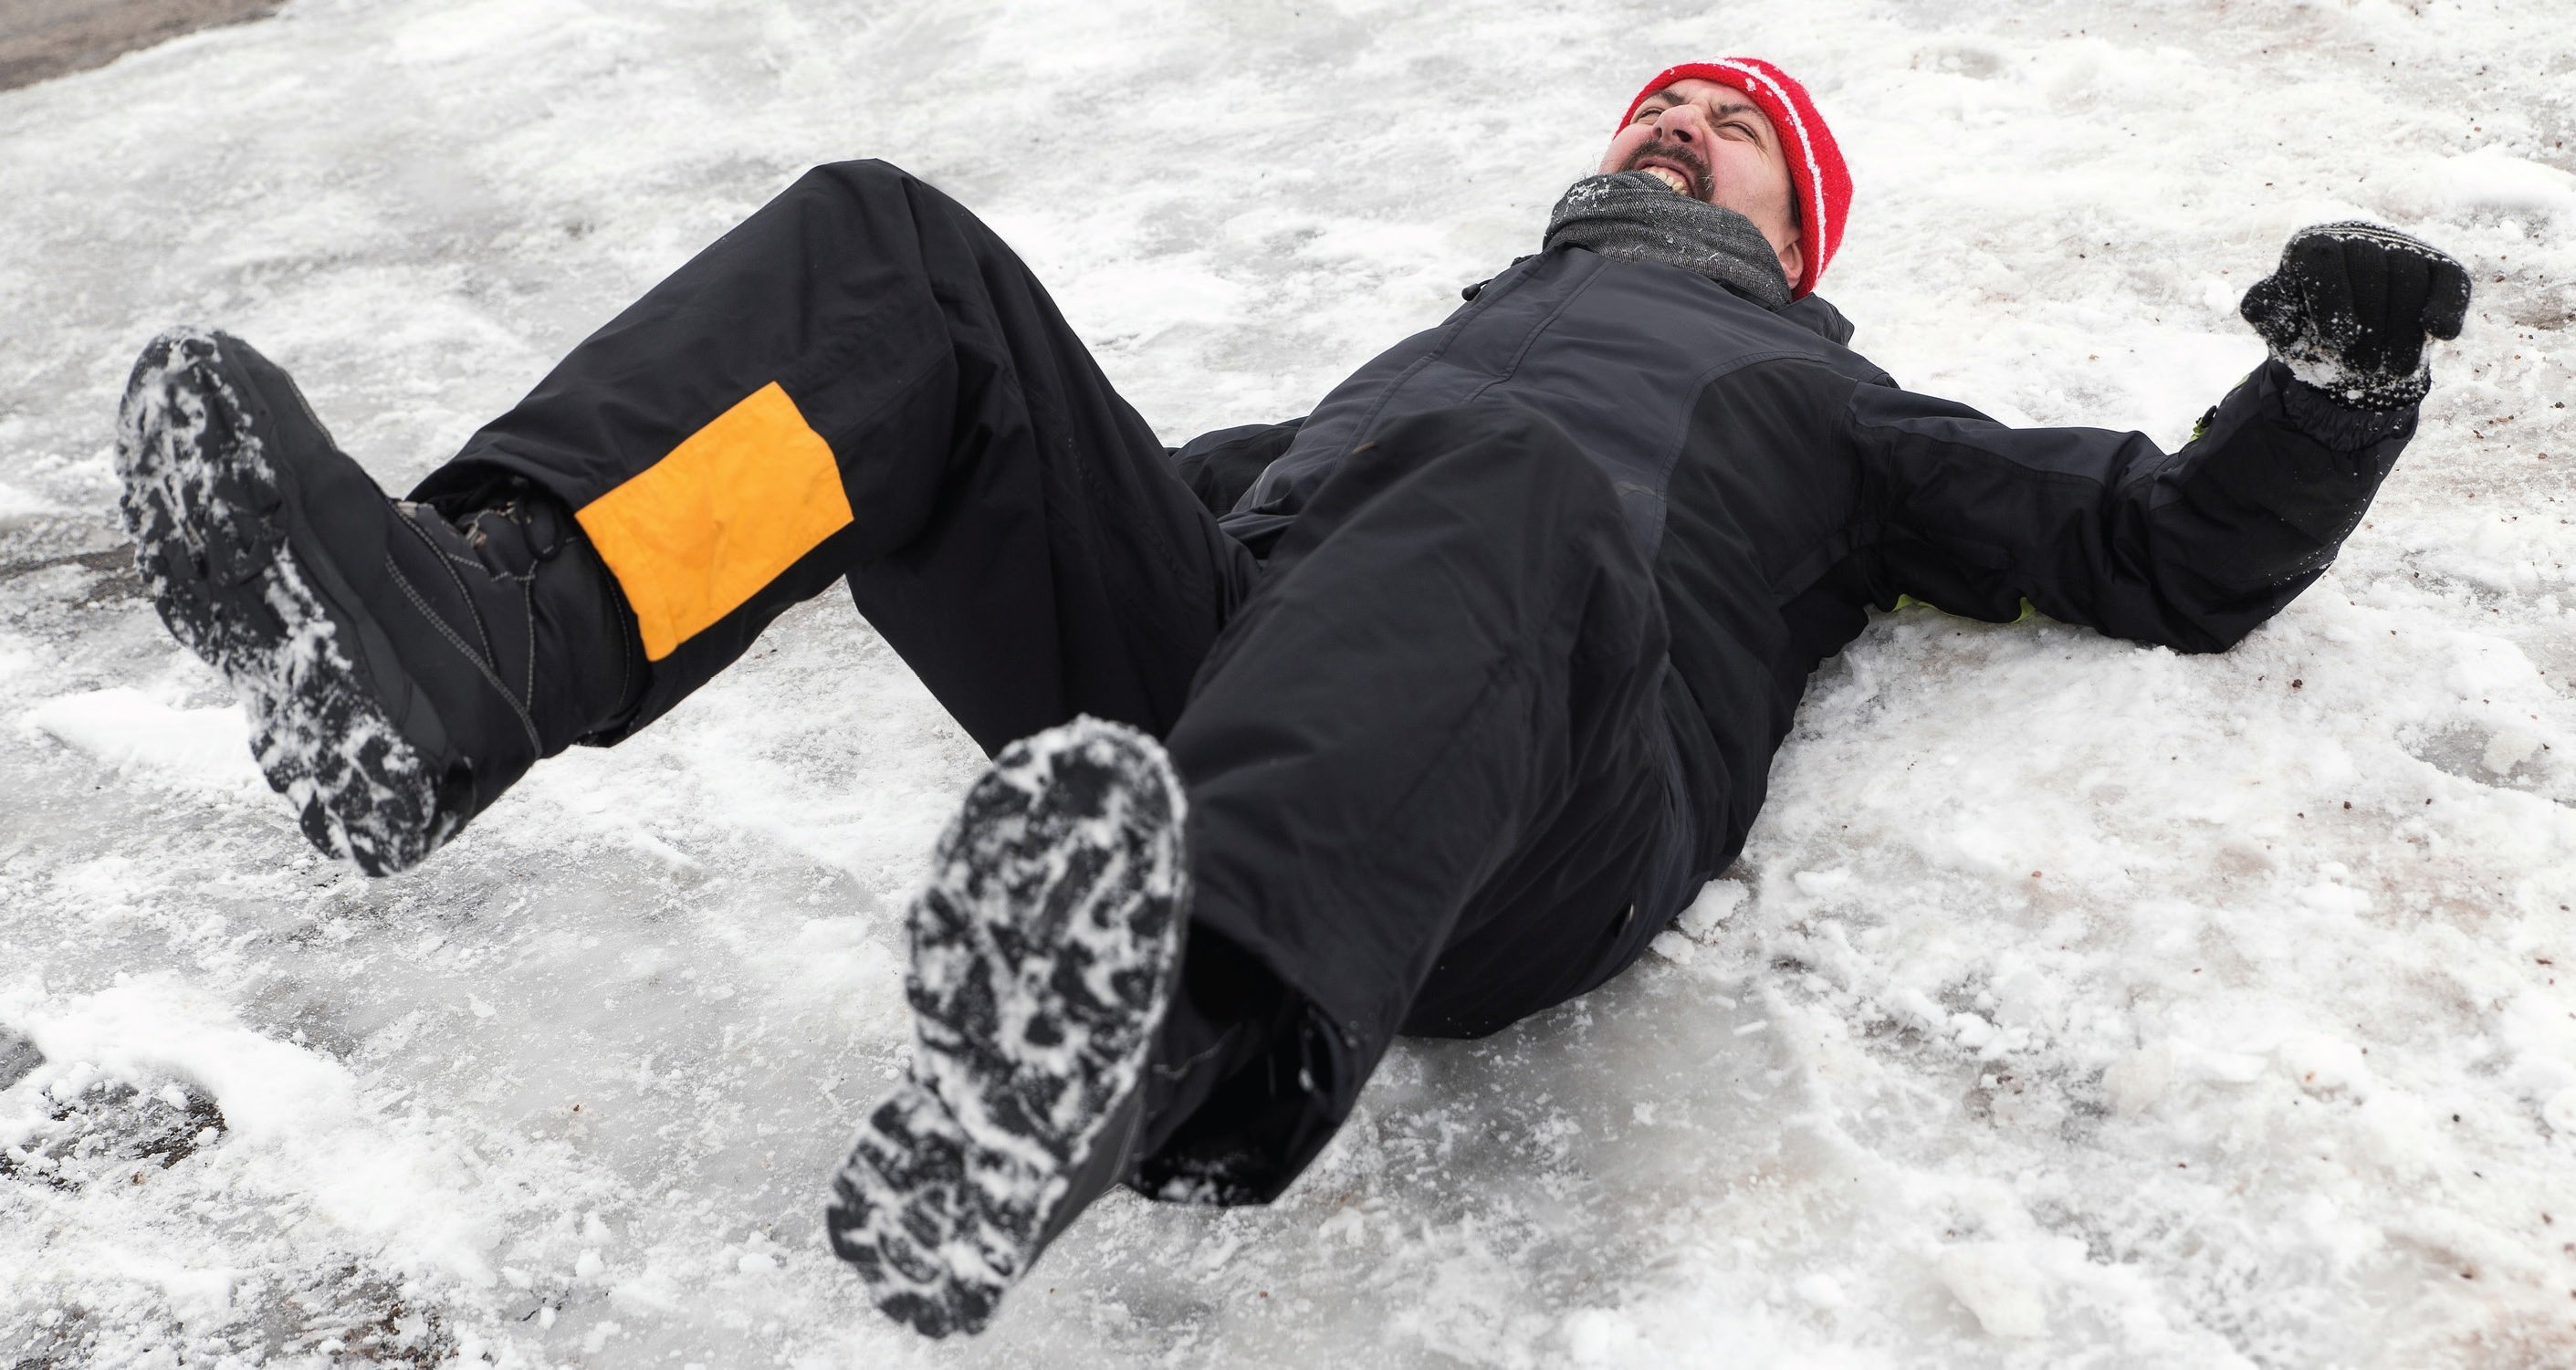 Начала часто падать. Человек падает на льду. Падение зимой.